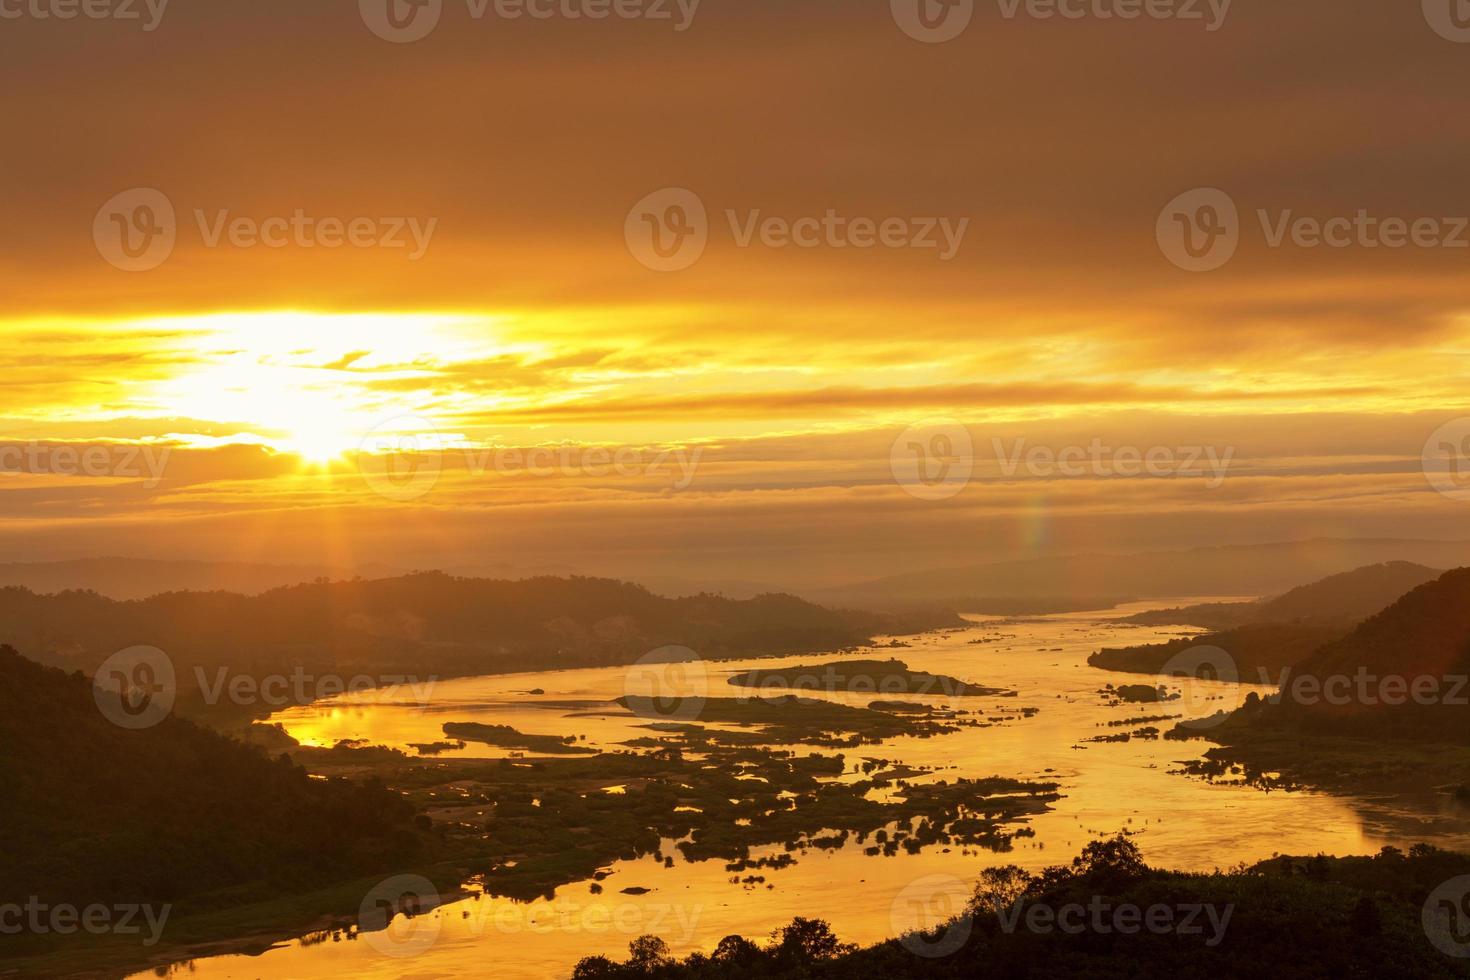 río mekong amanecer hora dorada hermosos paisajes entre laos-thai, el mejor río emblemático de asia. foto